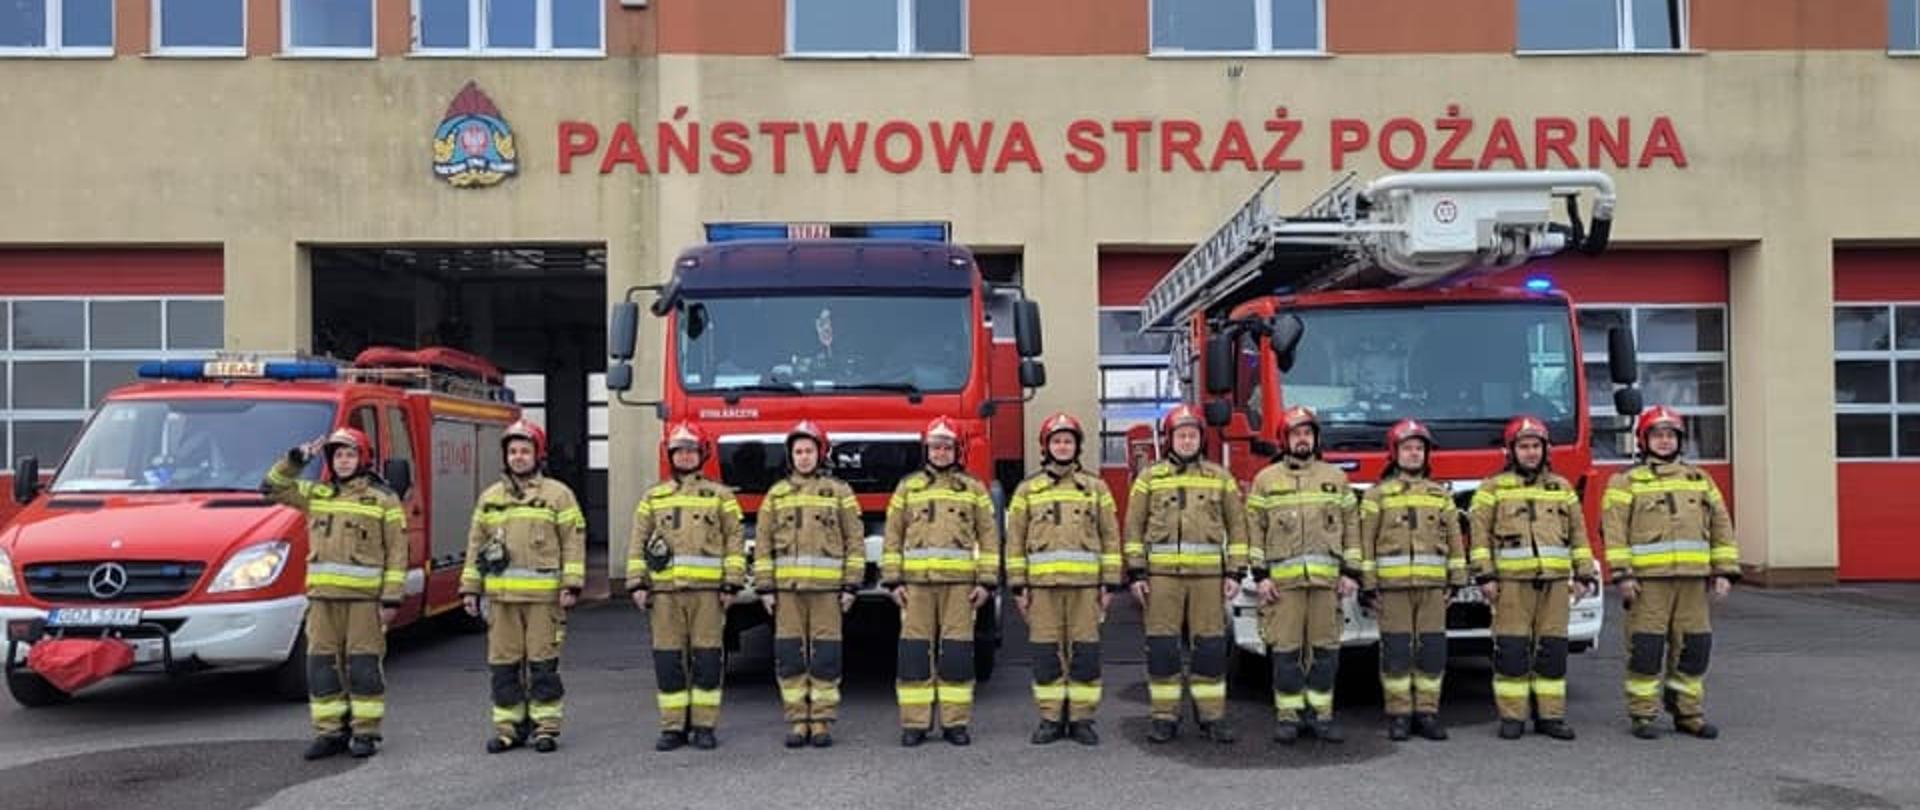 Zdjęcie przedstawia strażaków przed pojazdami ratowniczymi, w trakcie oddawania hołdu strażakom poległym na wojnie w Ukrainie.